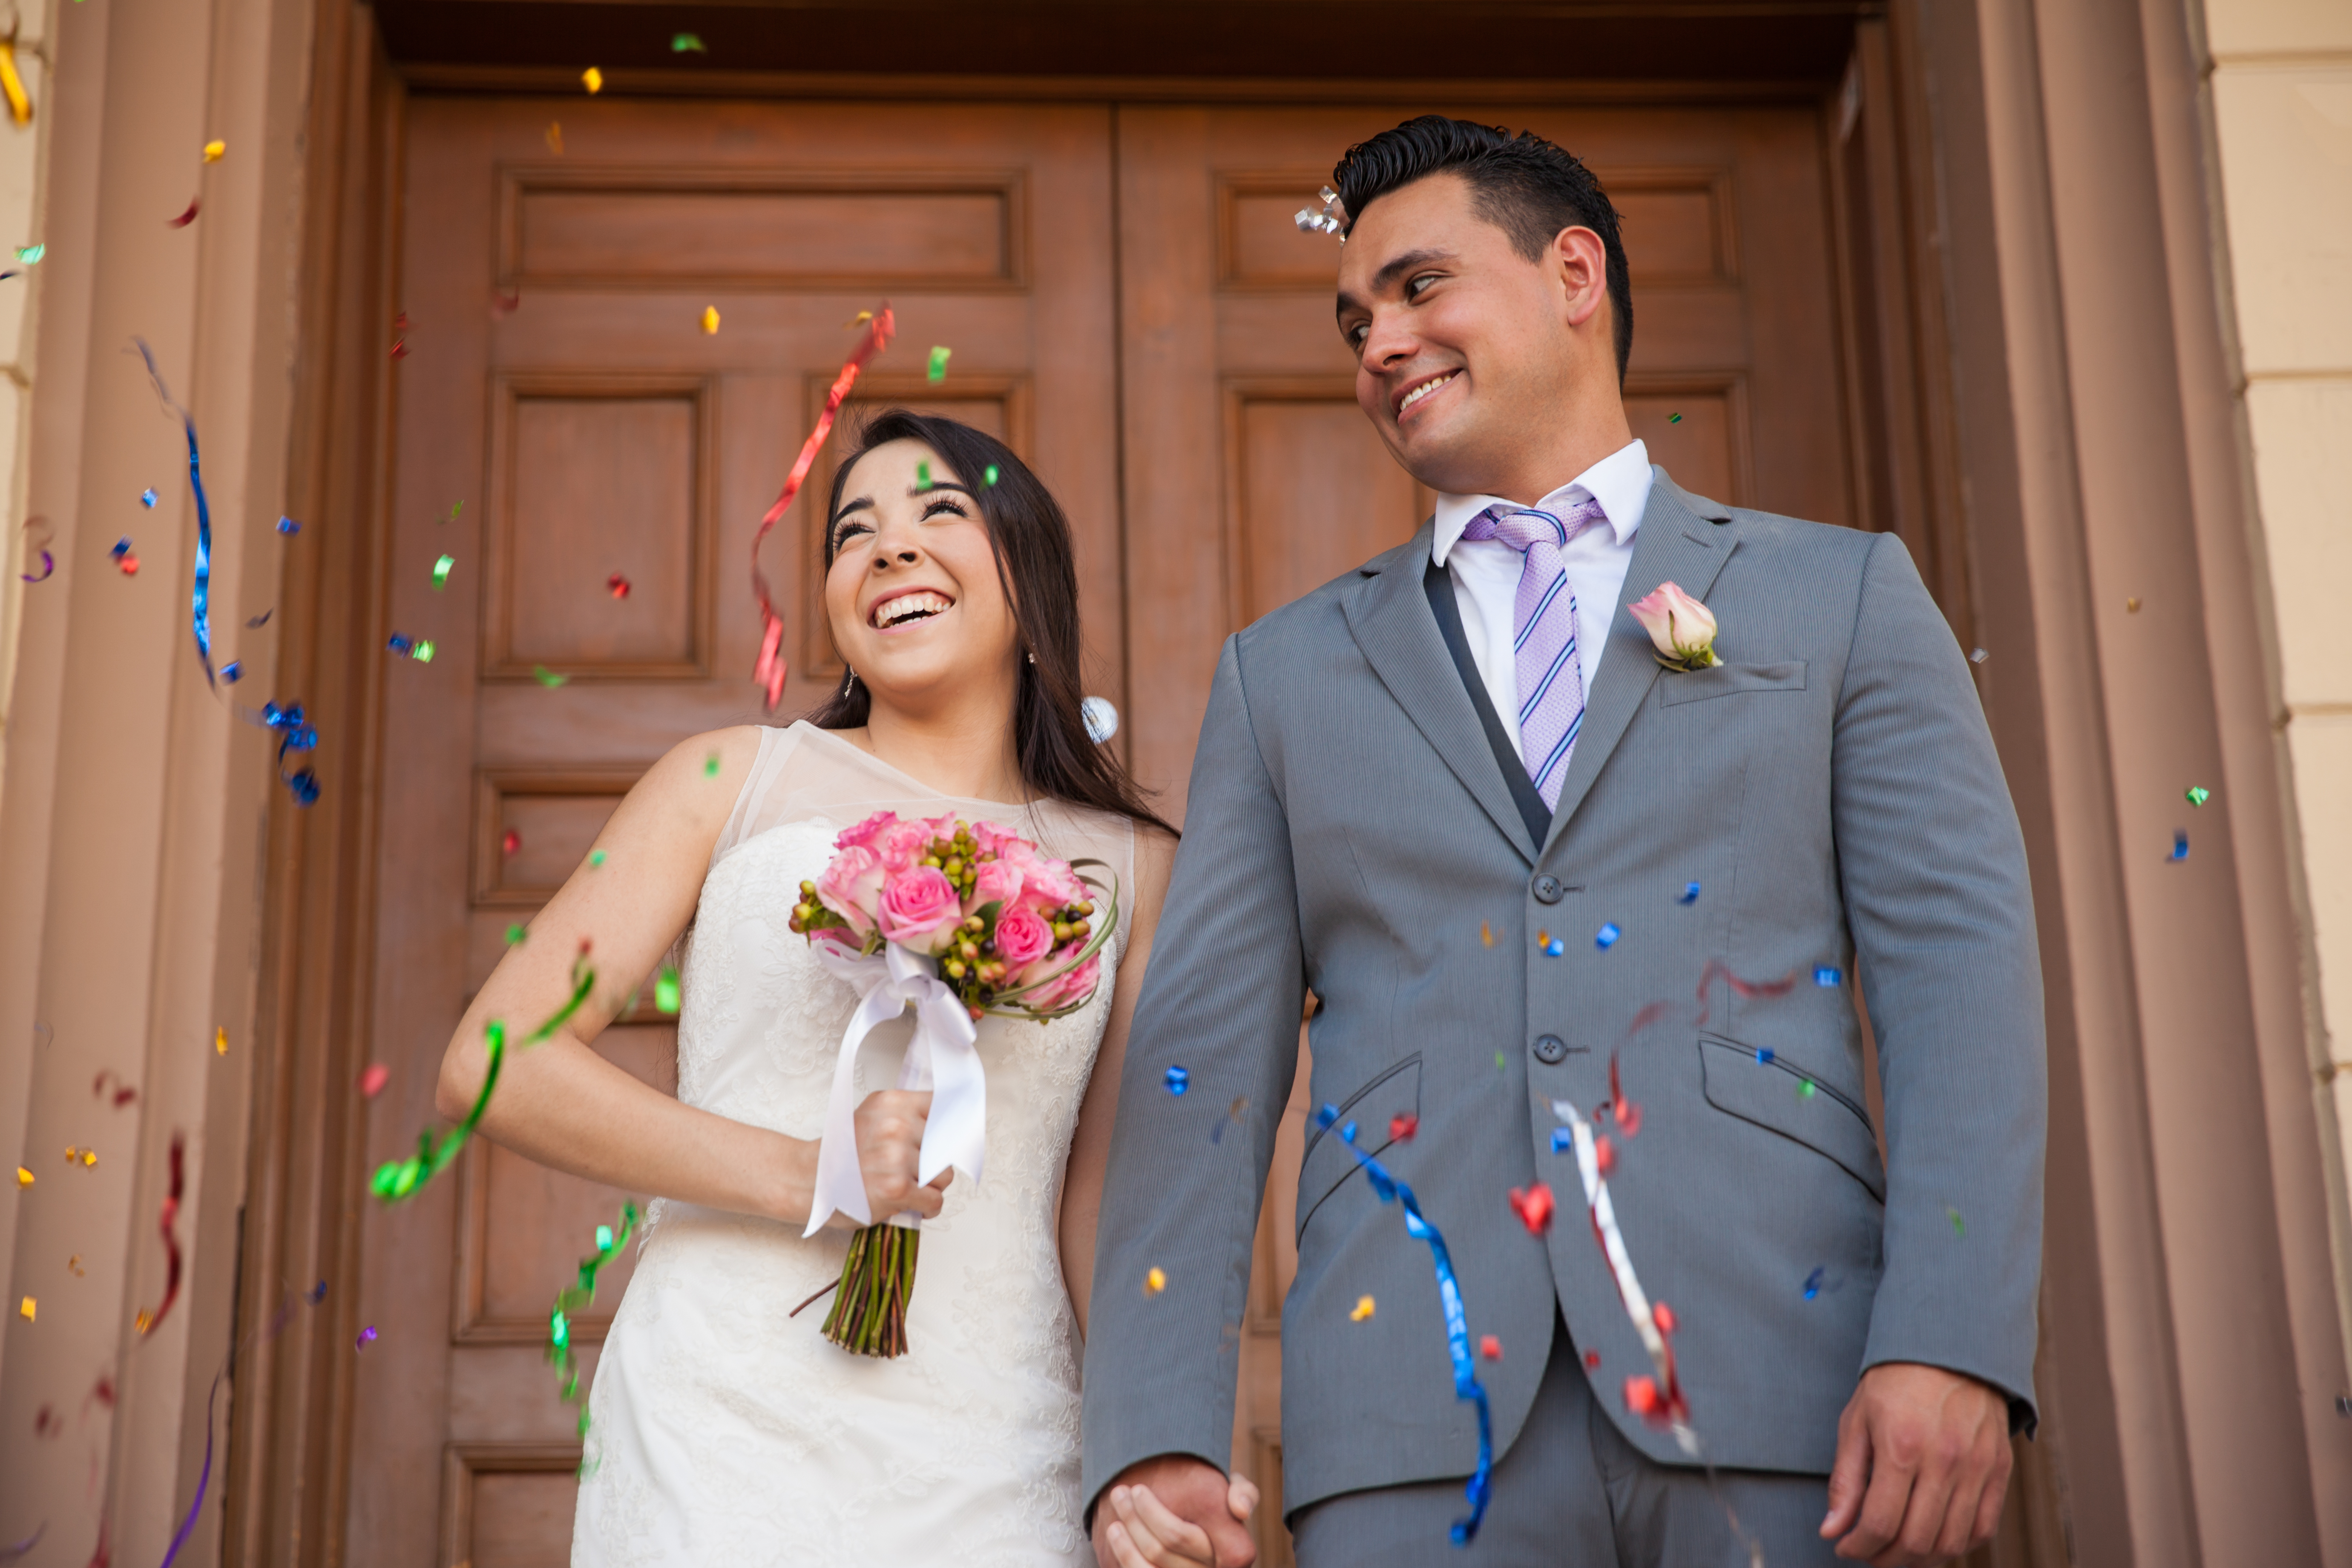 Les mariés dans un palais de justice | Source : Shutterstock